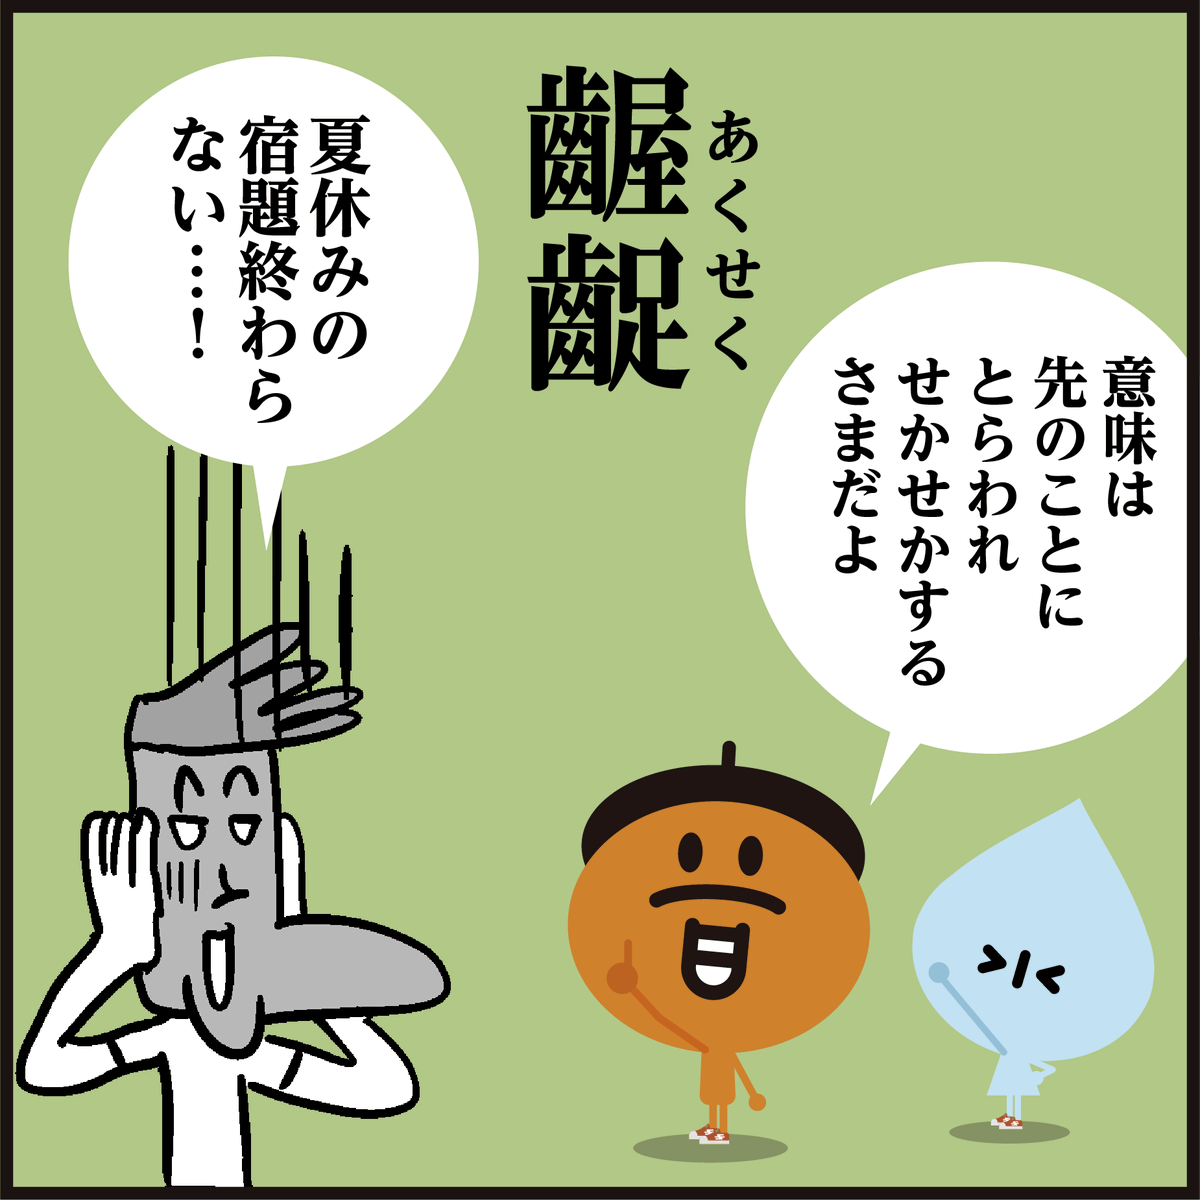 漢字【齷齪】読めましたか?🤔
画数は46画です…<4コマ漫画>
【齷】は細かい、狭い、という意味、【齪】はゆとりがないという意味です。
「齷」も「齪」も「齷齪」という熟語にしか使われない漢字です。#イラスト #クイズ 